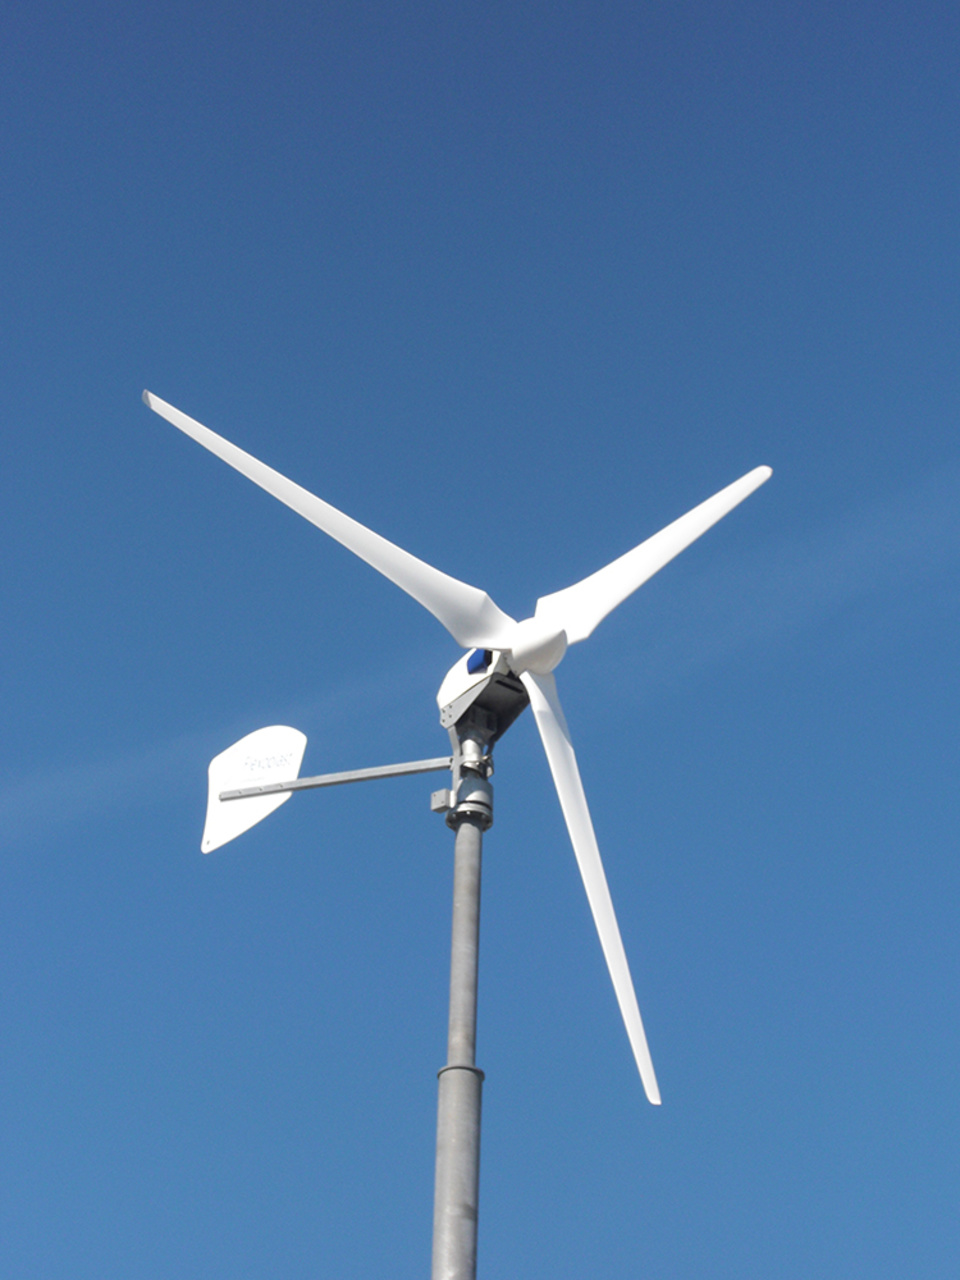 Windkraft2 bei Elektrotechnik Breitenbach in Gemünden am Main